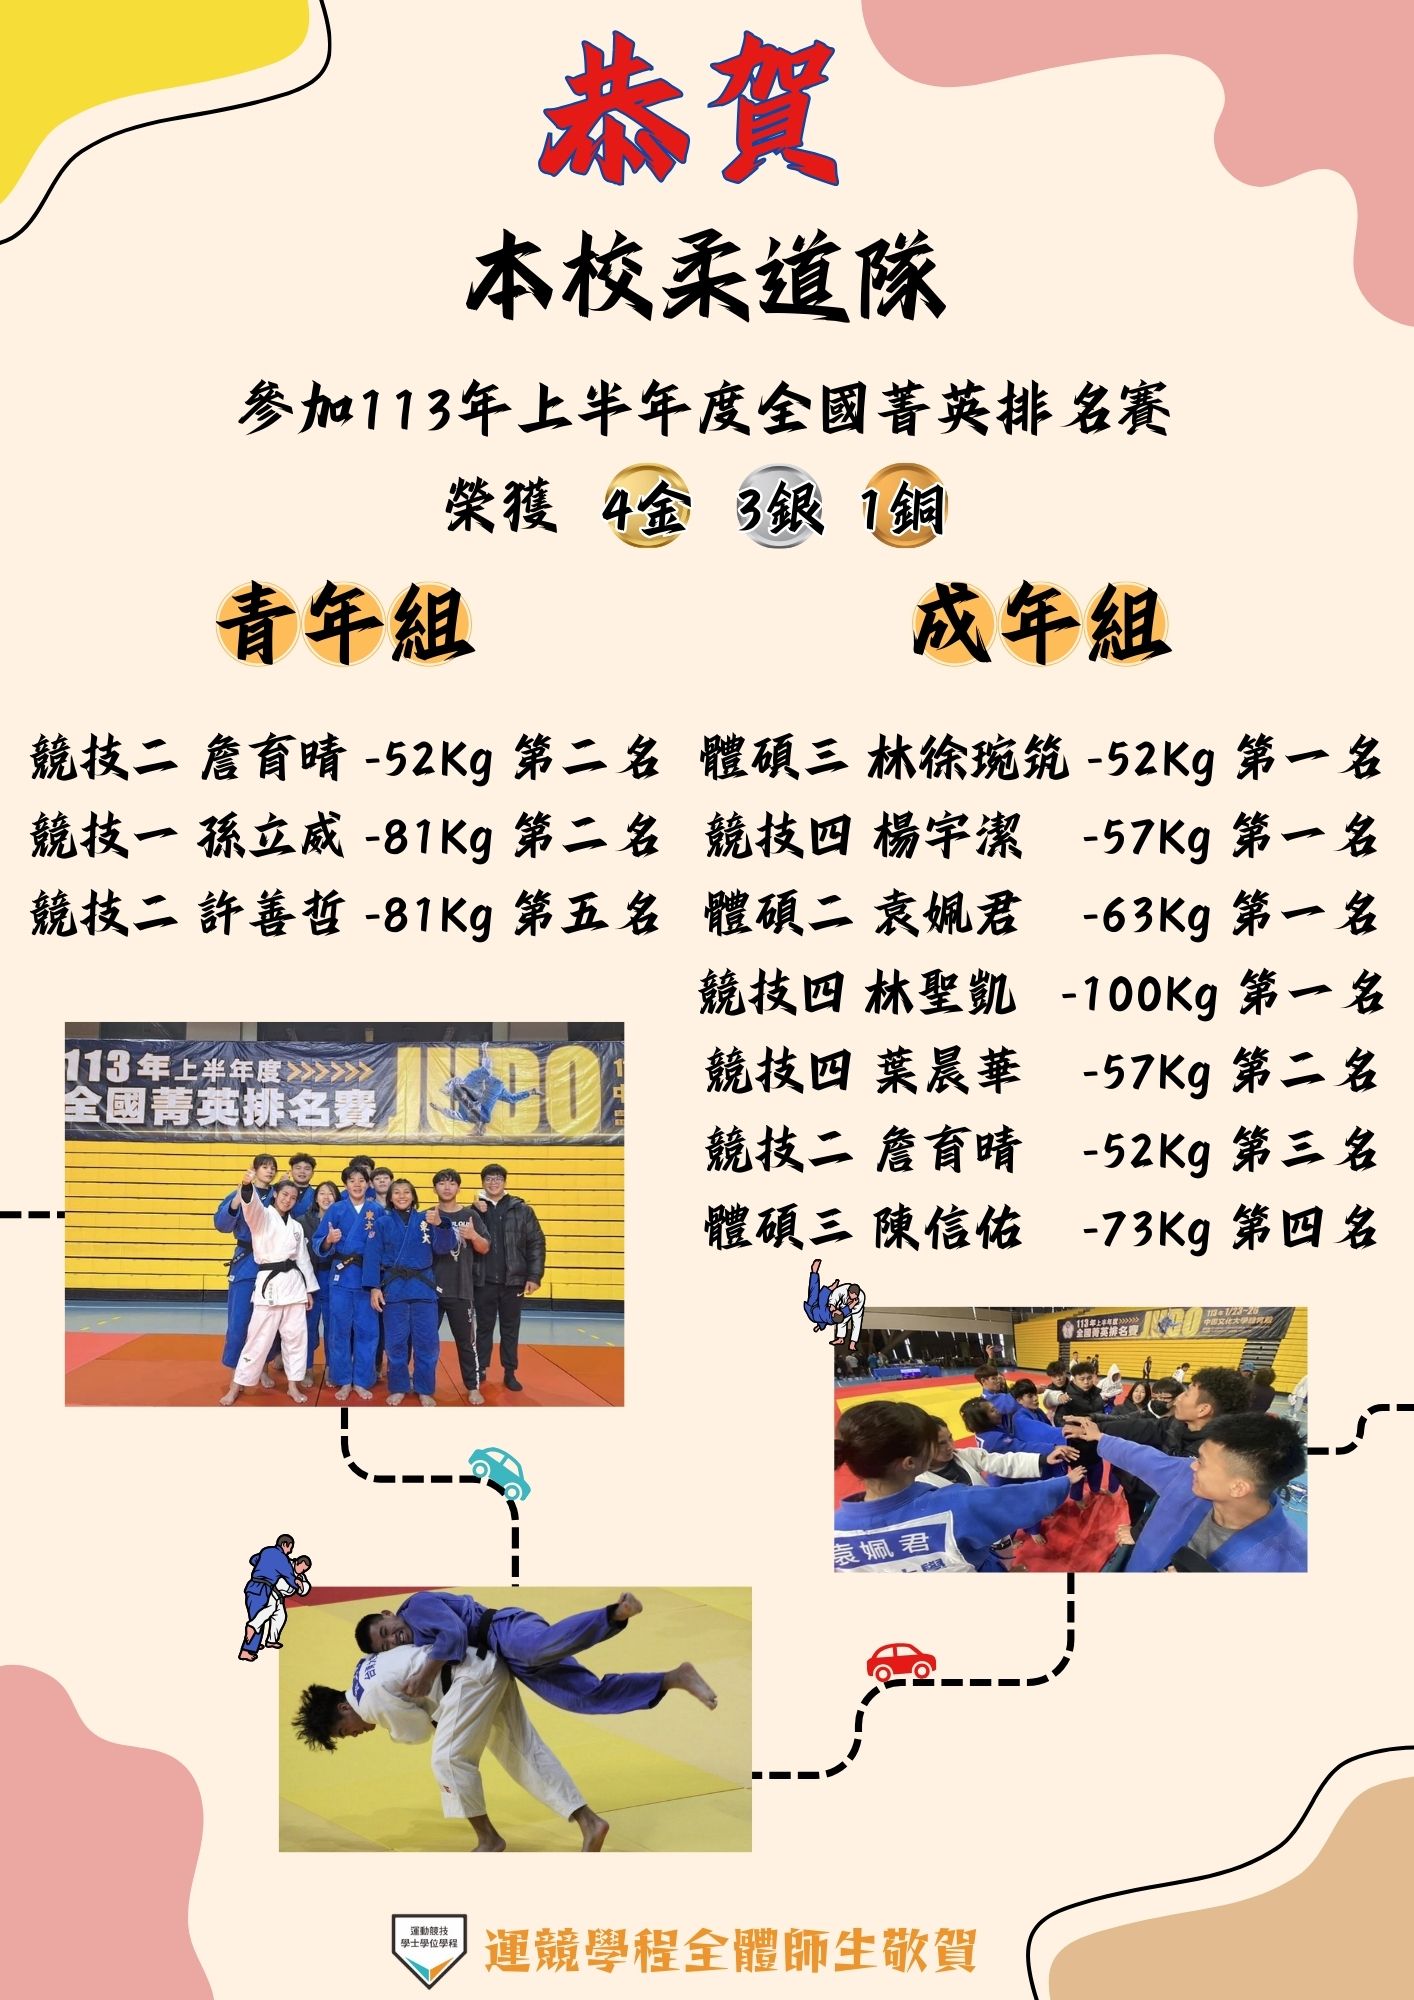 恭喜本校柔道隊參加113年上半年度全國菁英排名賽榮獲4金3銀1銅佳績!!